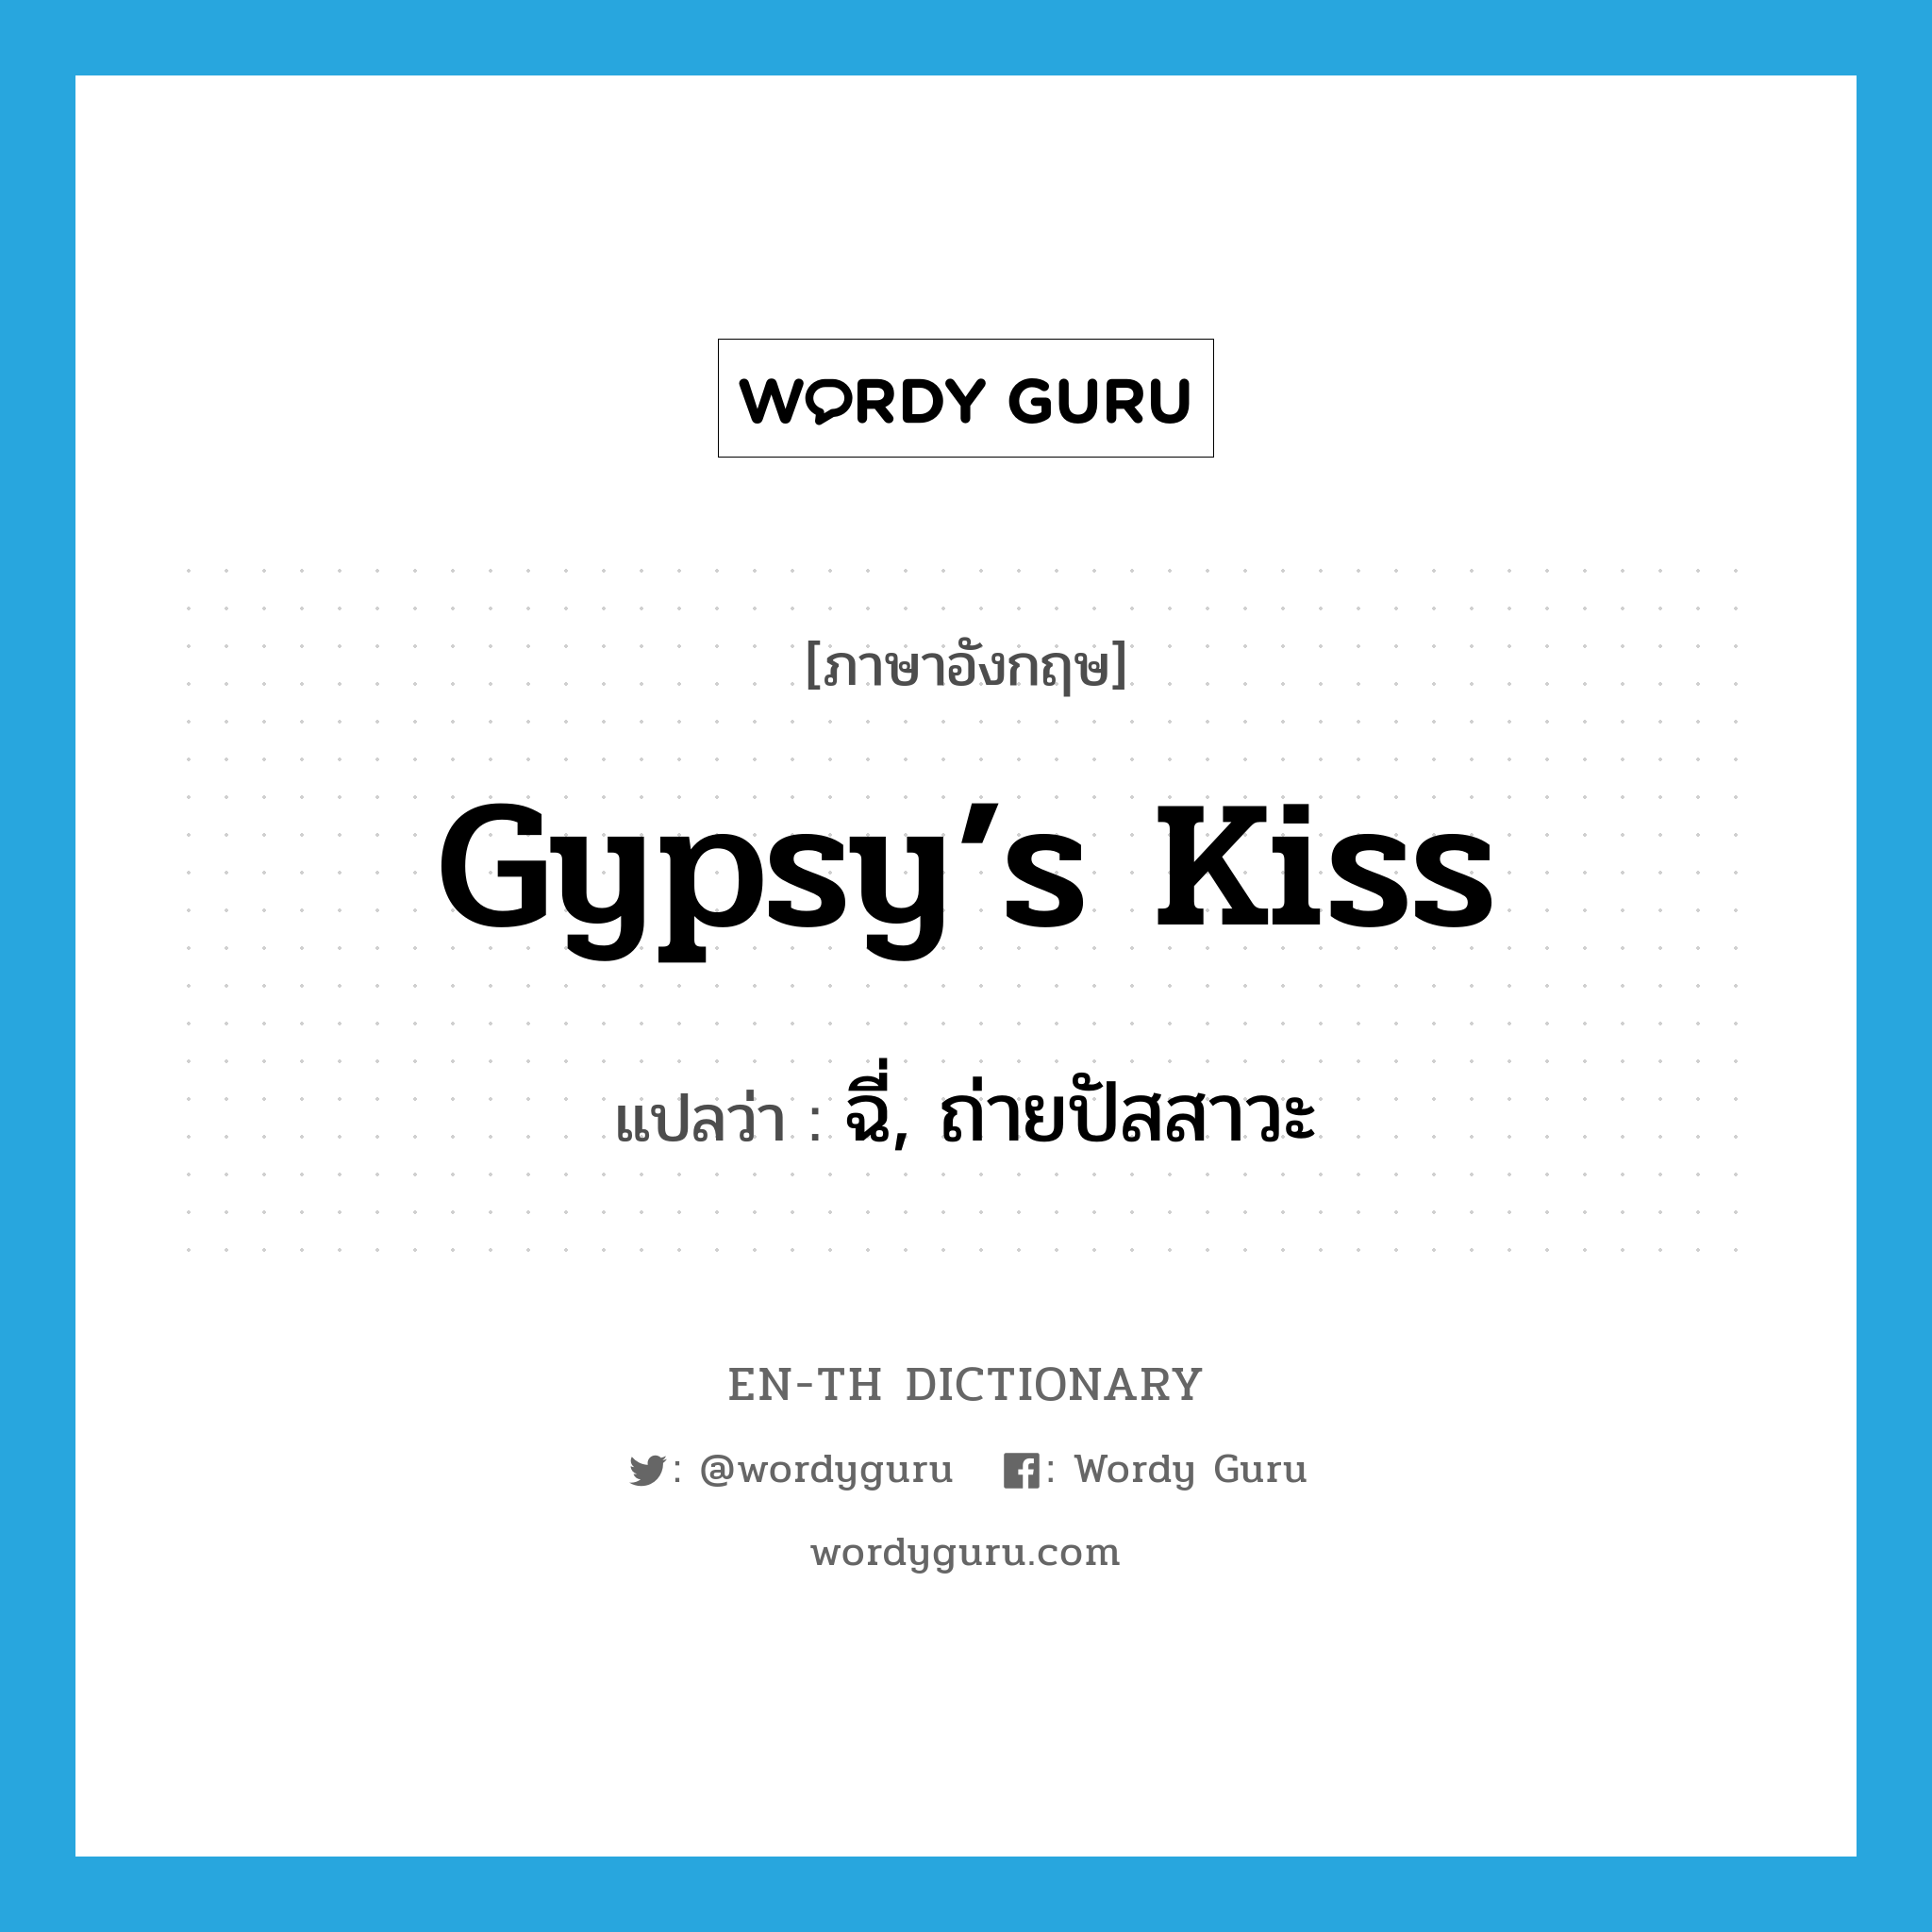 ฉี่, ถ่ายปัสสาวะ ภาษาอังกฤษ?, คำศัพท์ภาษาอังกฤษ ฉี่, ถ่ายปัสสาวะ แปลว่า gypsy’s kiss ประเภท SL หมวด SL